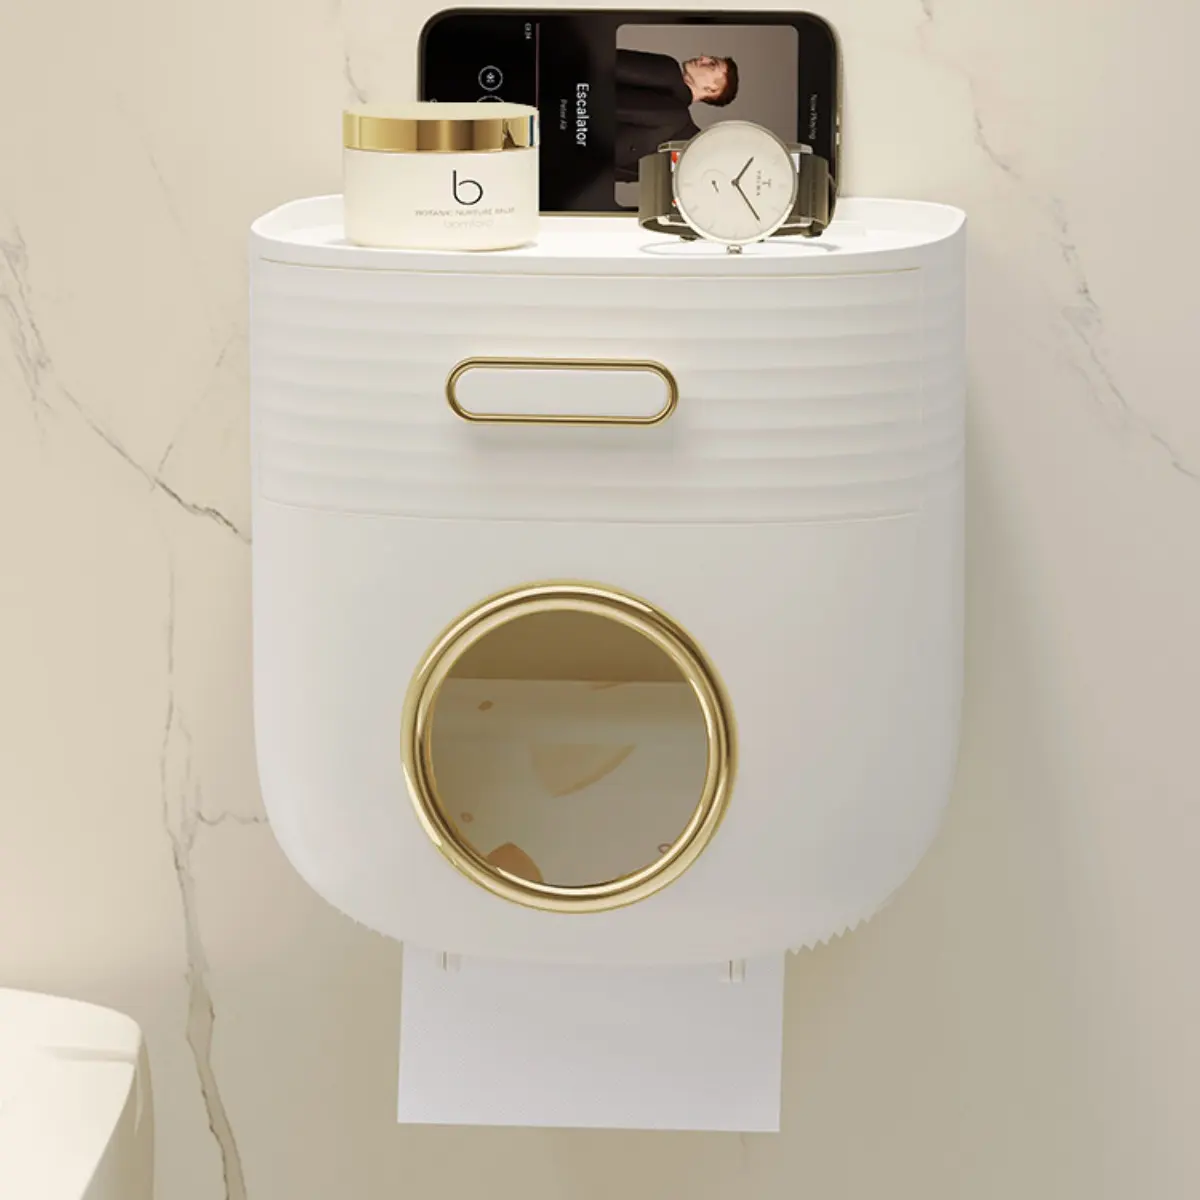 Küchen toilette Badezimmer ABS Kunststoff Taschentuch box Wand montierte manuelle Handtuch serviette nicht stanzender Papier handtuch halter